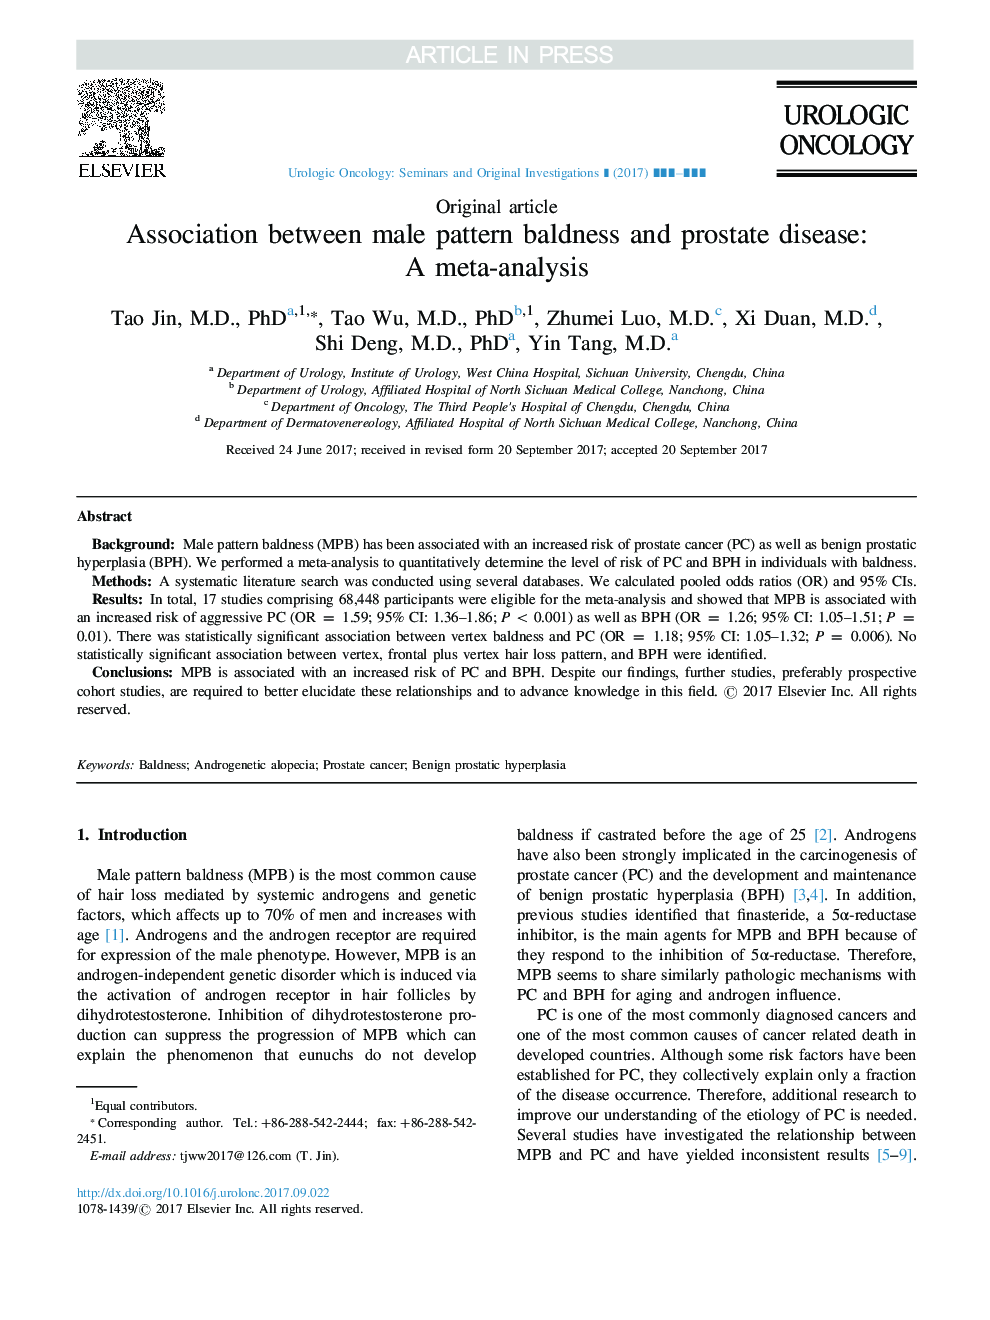 ارتباط بین طاسی الگوی مرد و بیماری پروستات: یک متاآنالیز 